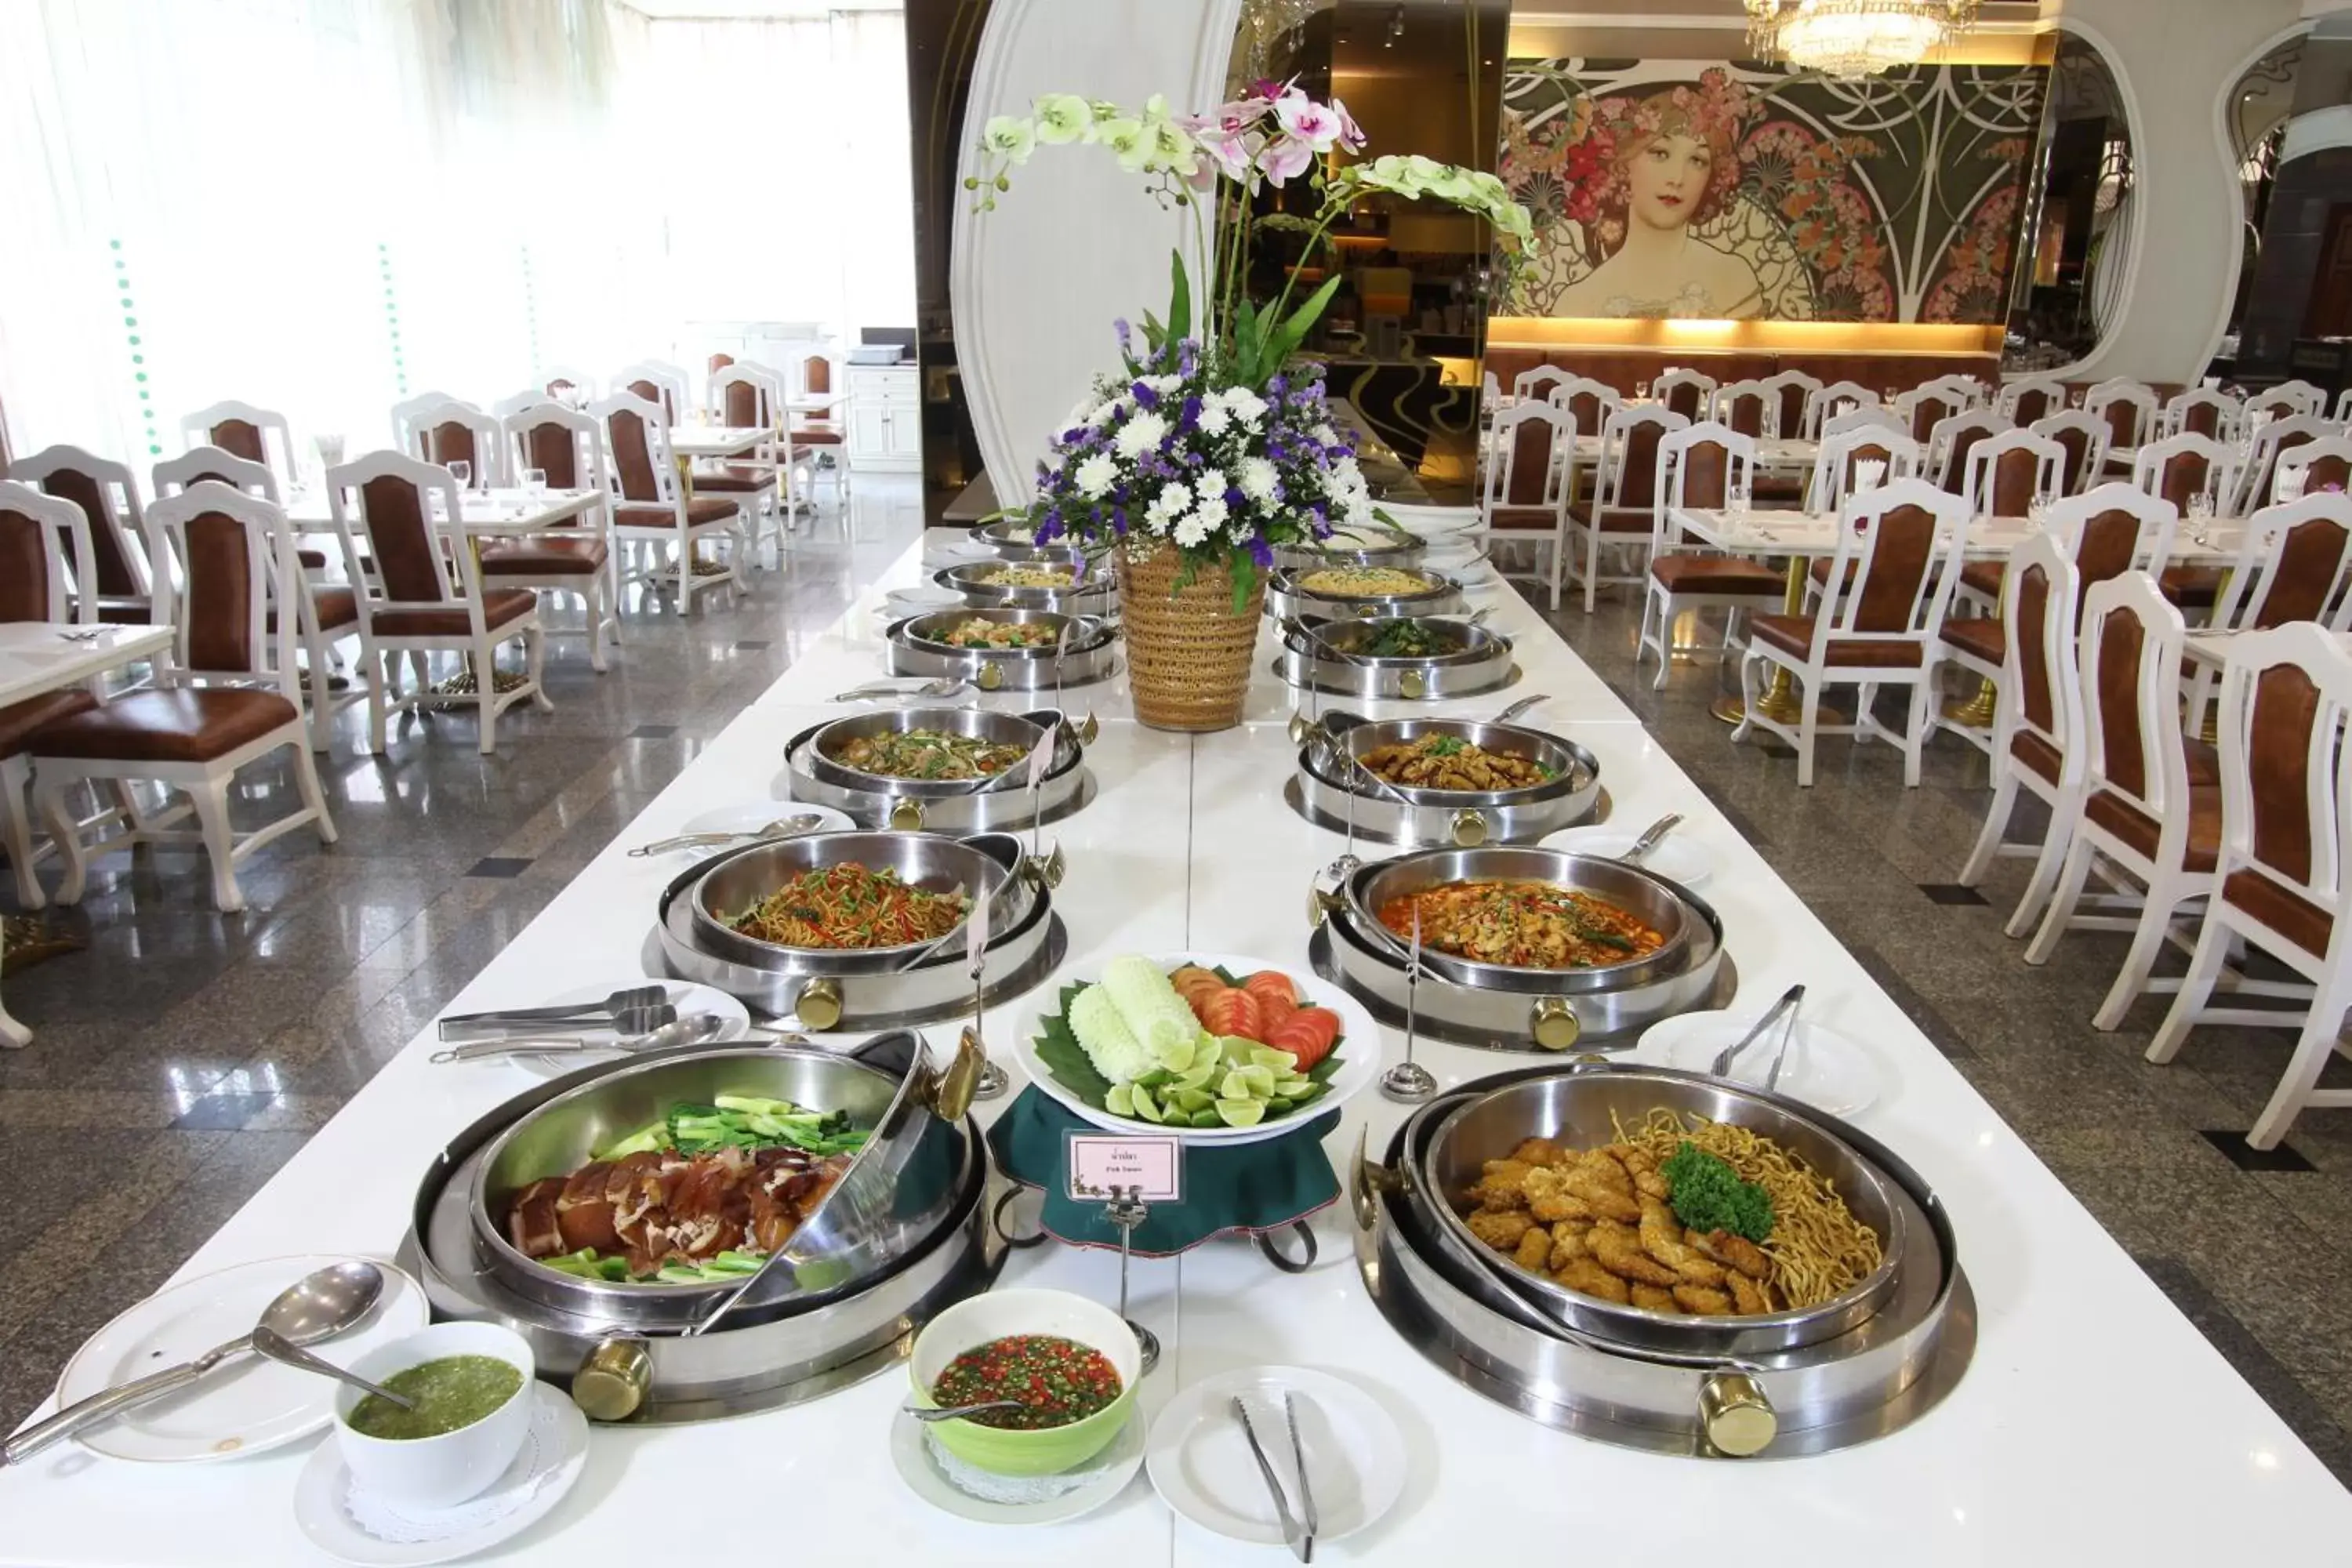 Food close-up in Royal Benja Hotel